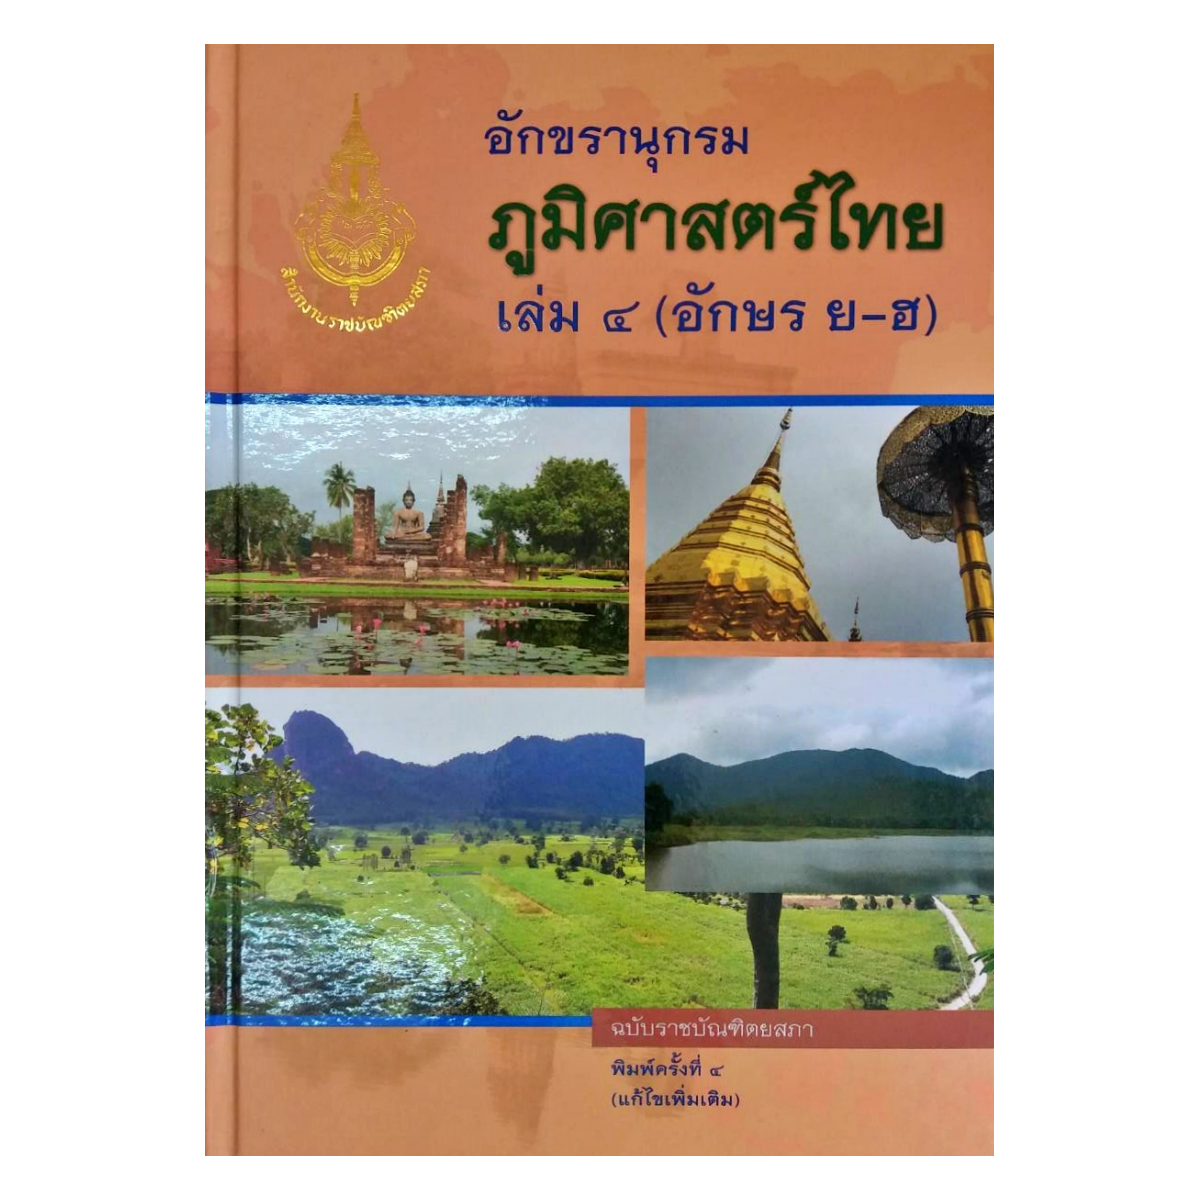 ราชบัณฑิต :  อักขรานุกรมภูมิศาสตร์ไทย เล่ม ๔ (อักษร ย - ฮ)